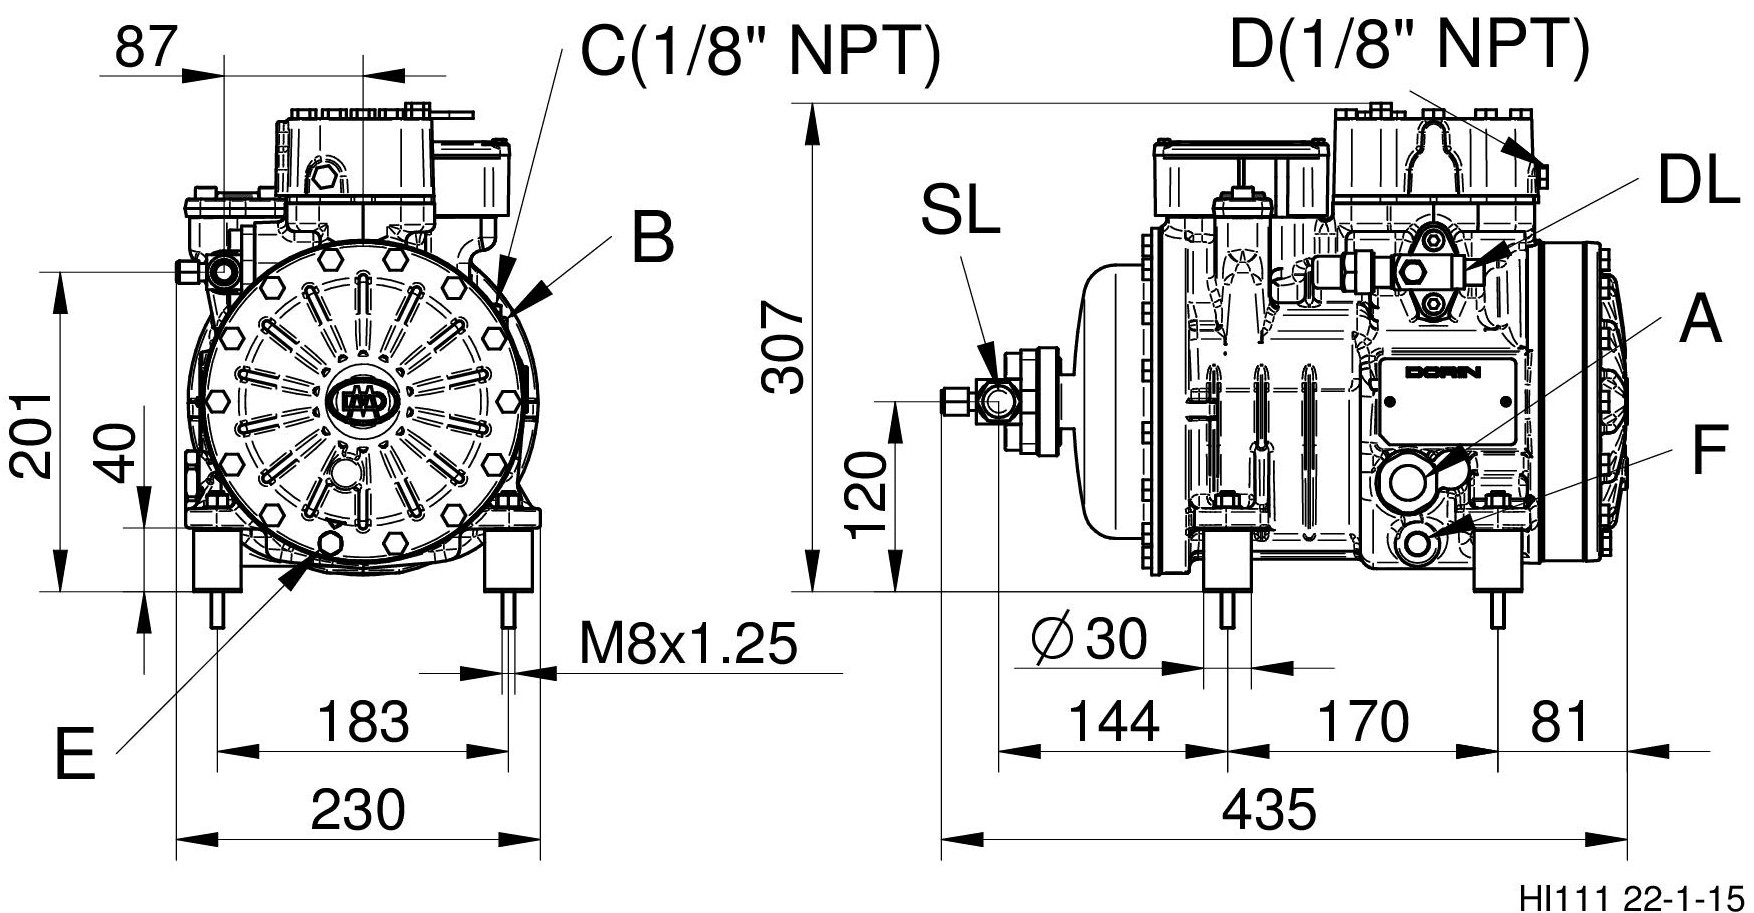 HI101CC - Compressore Semiermetico per Inverter HI11 | DORIN